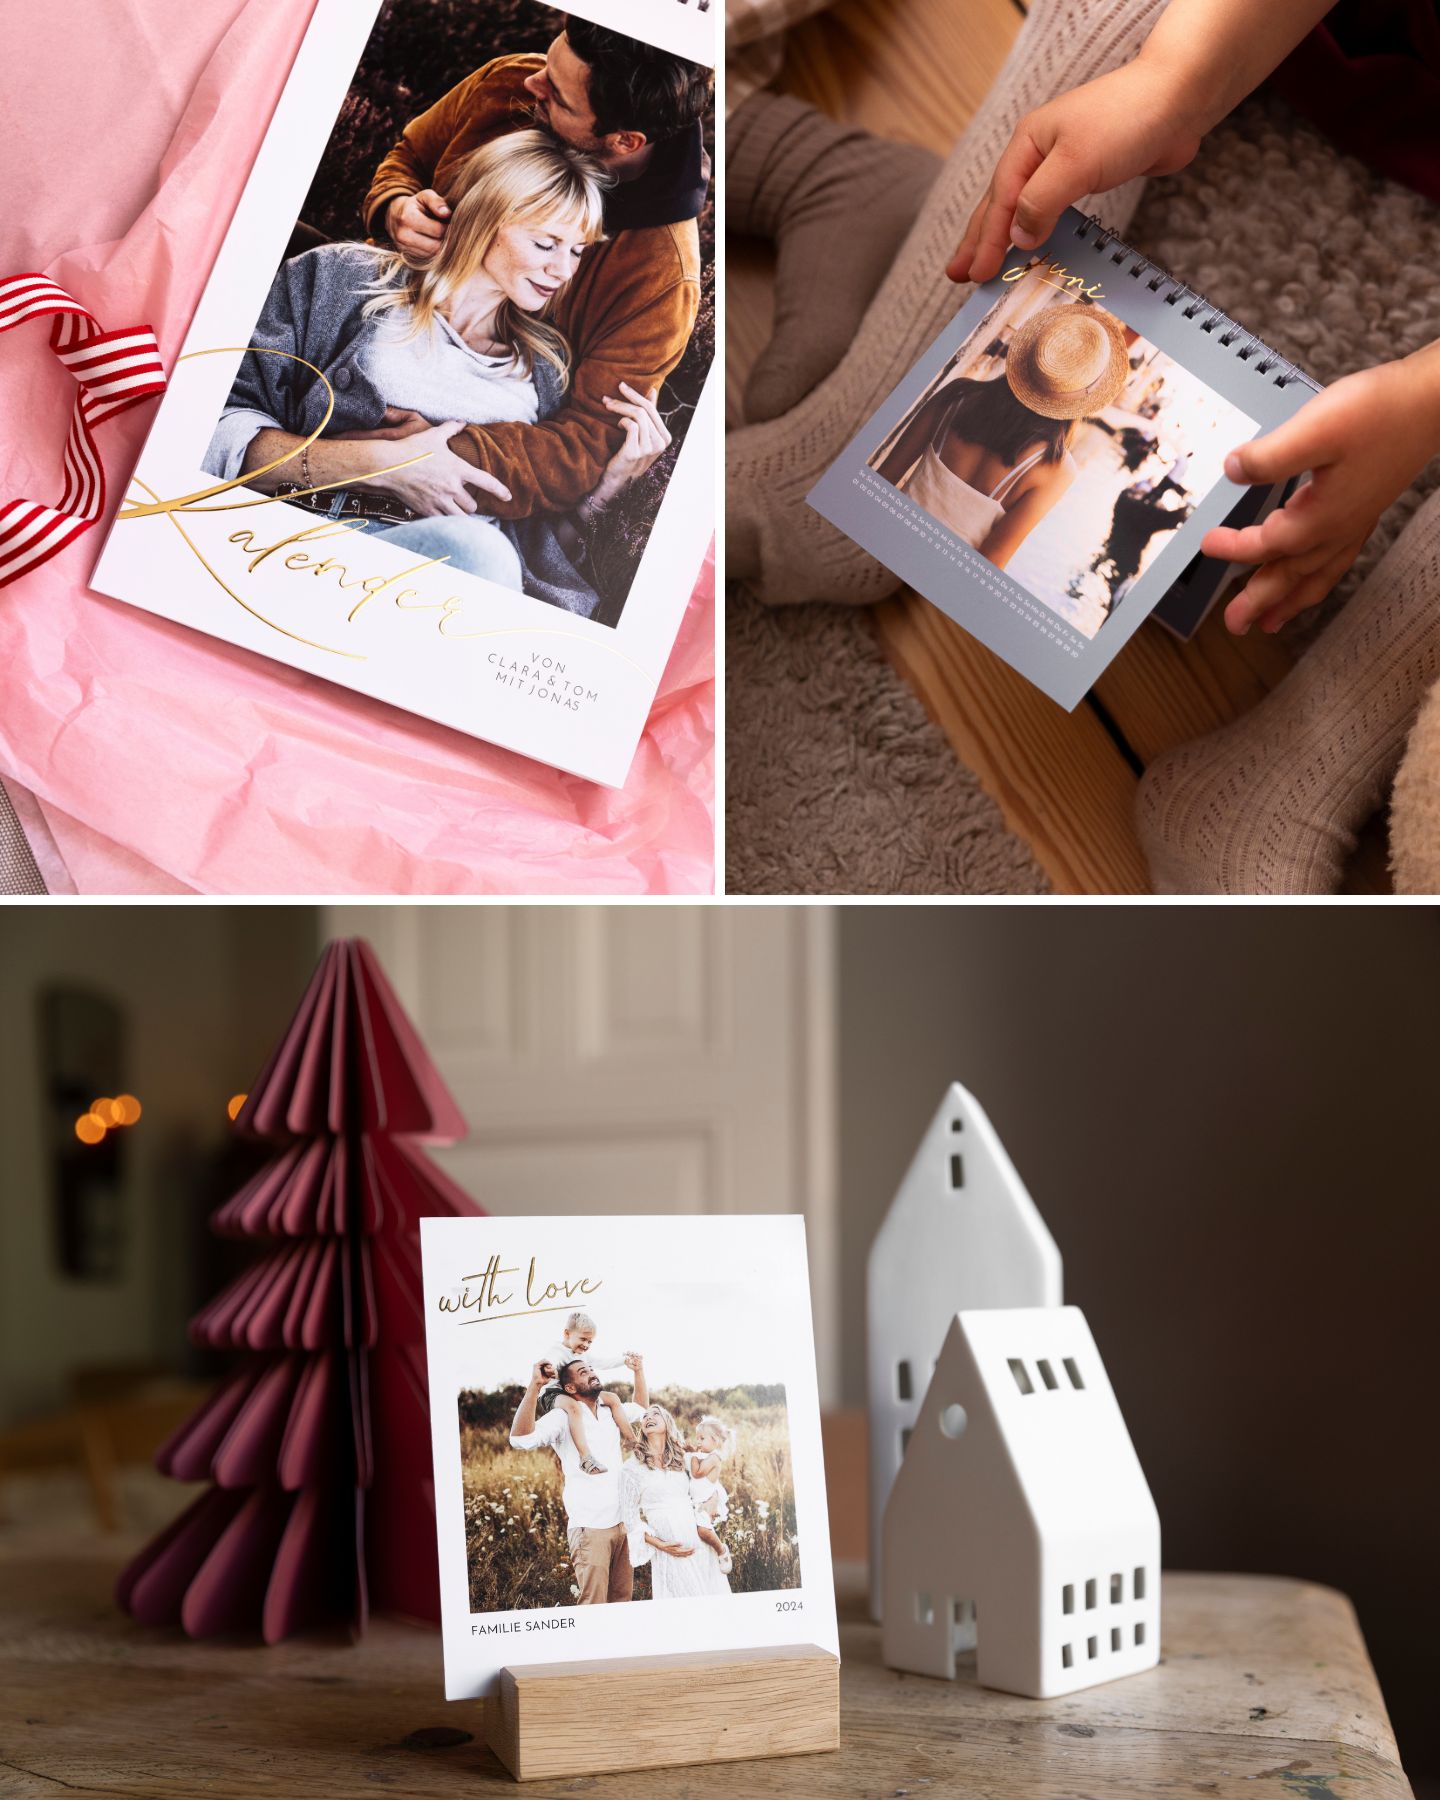 Zauberhafte Wandkalender als Fotogeschenke Ideen auf dem Tisch drapiert, mit eignen Fotos gestaltet, Fotogeschenke als Idee zu Weihnachten verschenkt zu werden.